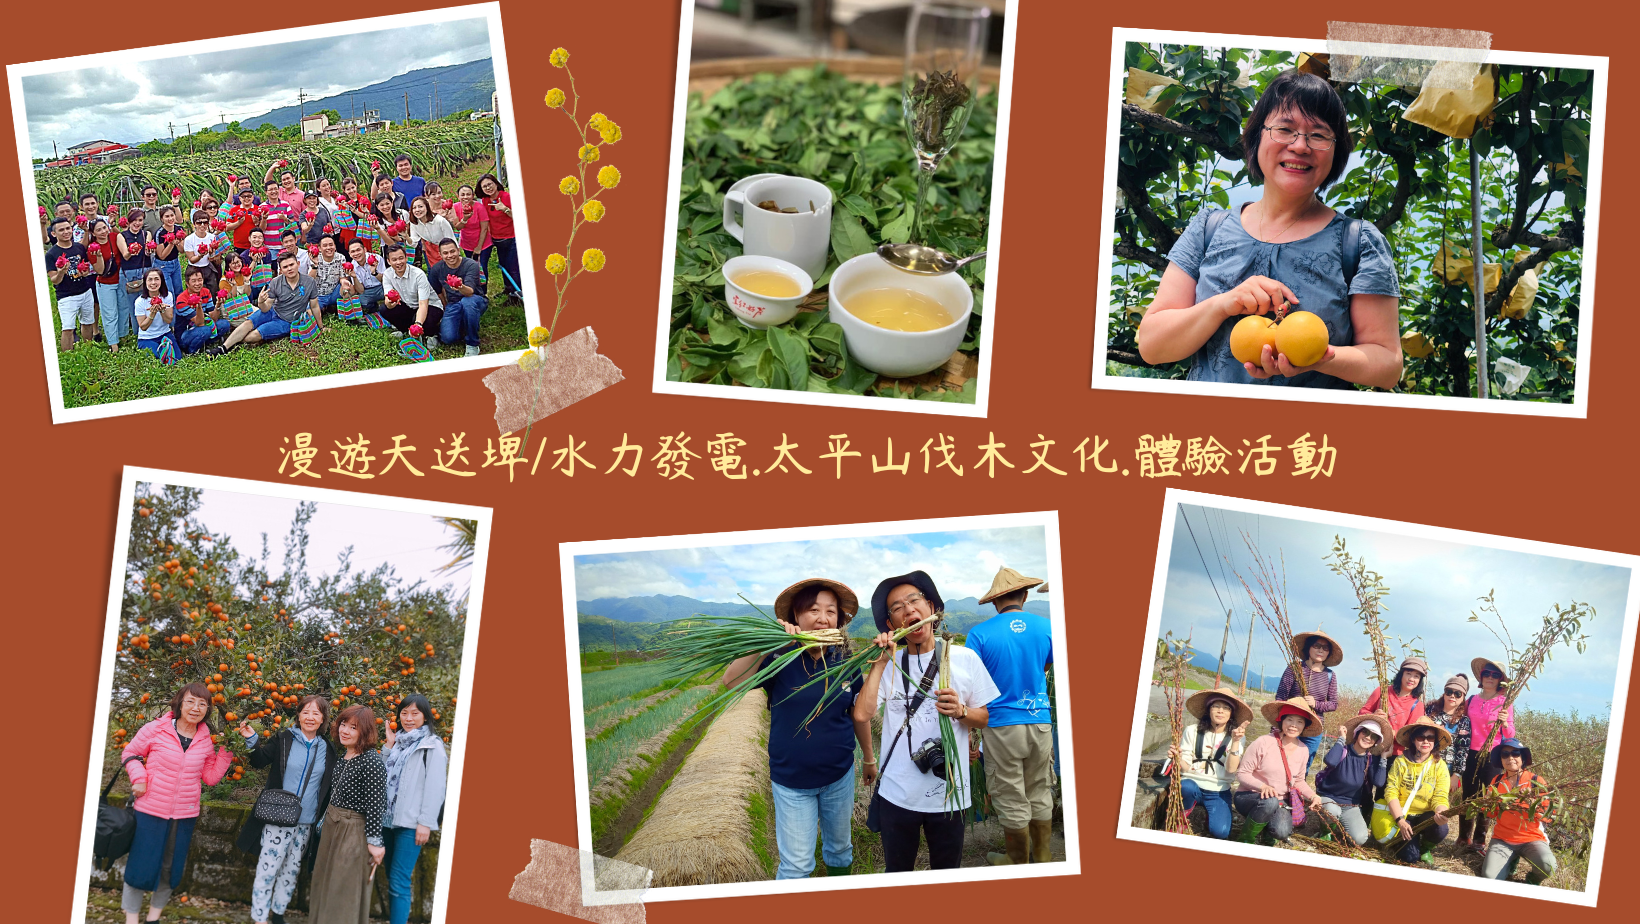 宜蘭天送埤休閒農業區舉辦產業媒合會　邀旅行業與學校參與 - 早安台灣新聞 | Morning Taiwan News